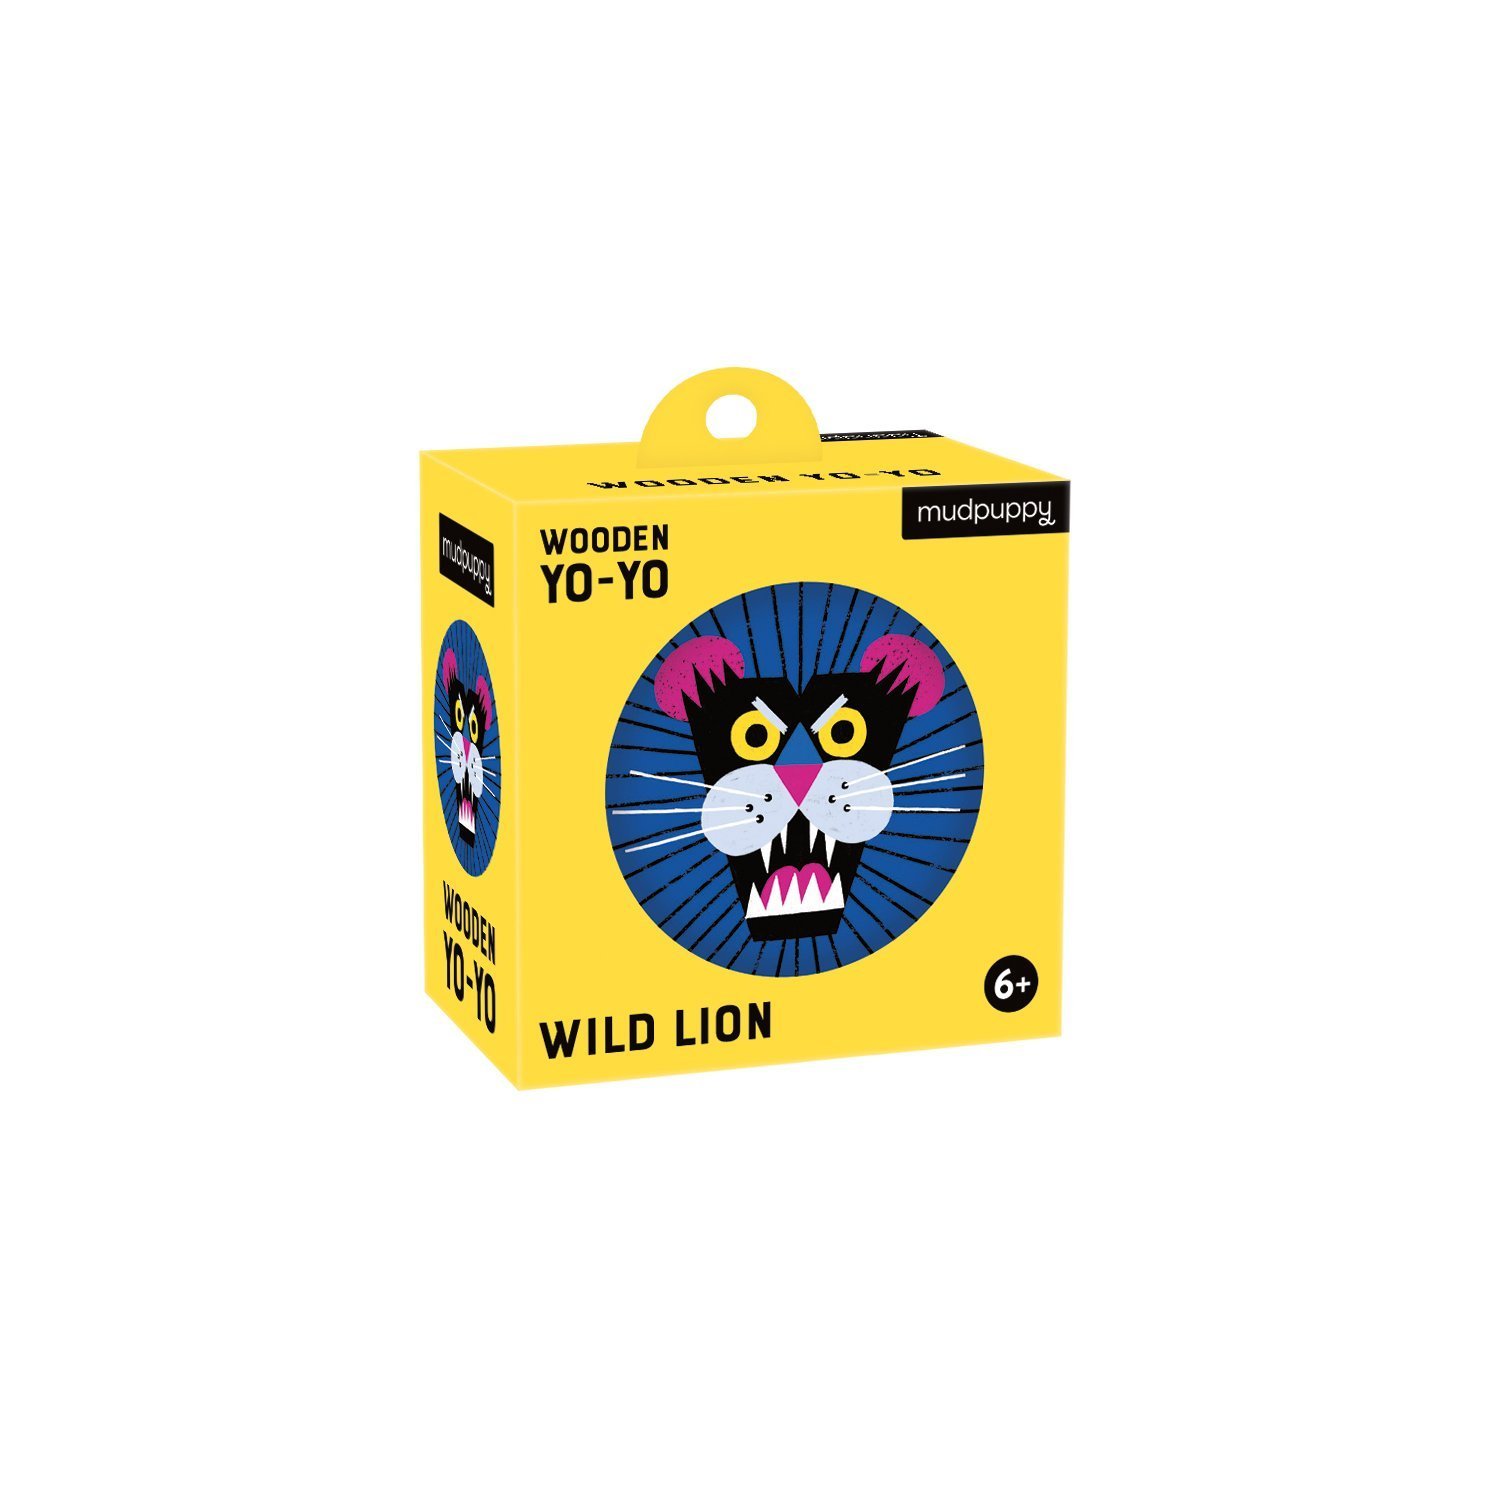 rob-hodgson-wild-lion-wooden-yo-yo-wooden-yo-yos-mudpuppy-384148_2400x.jpg